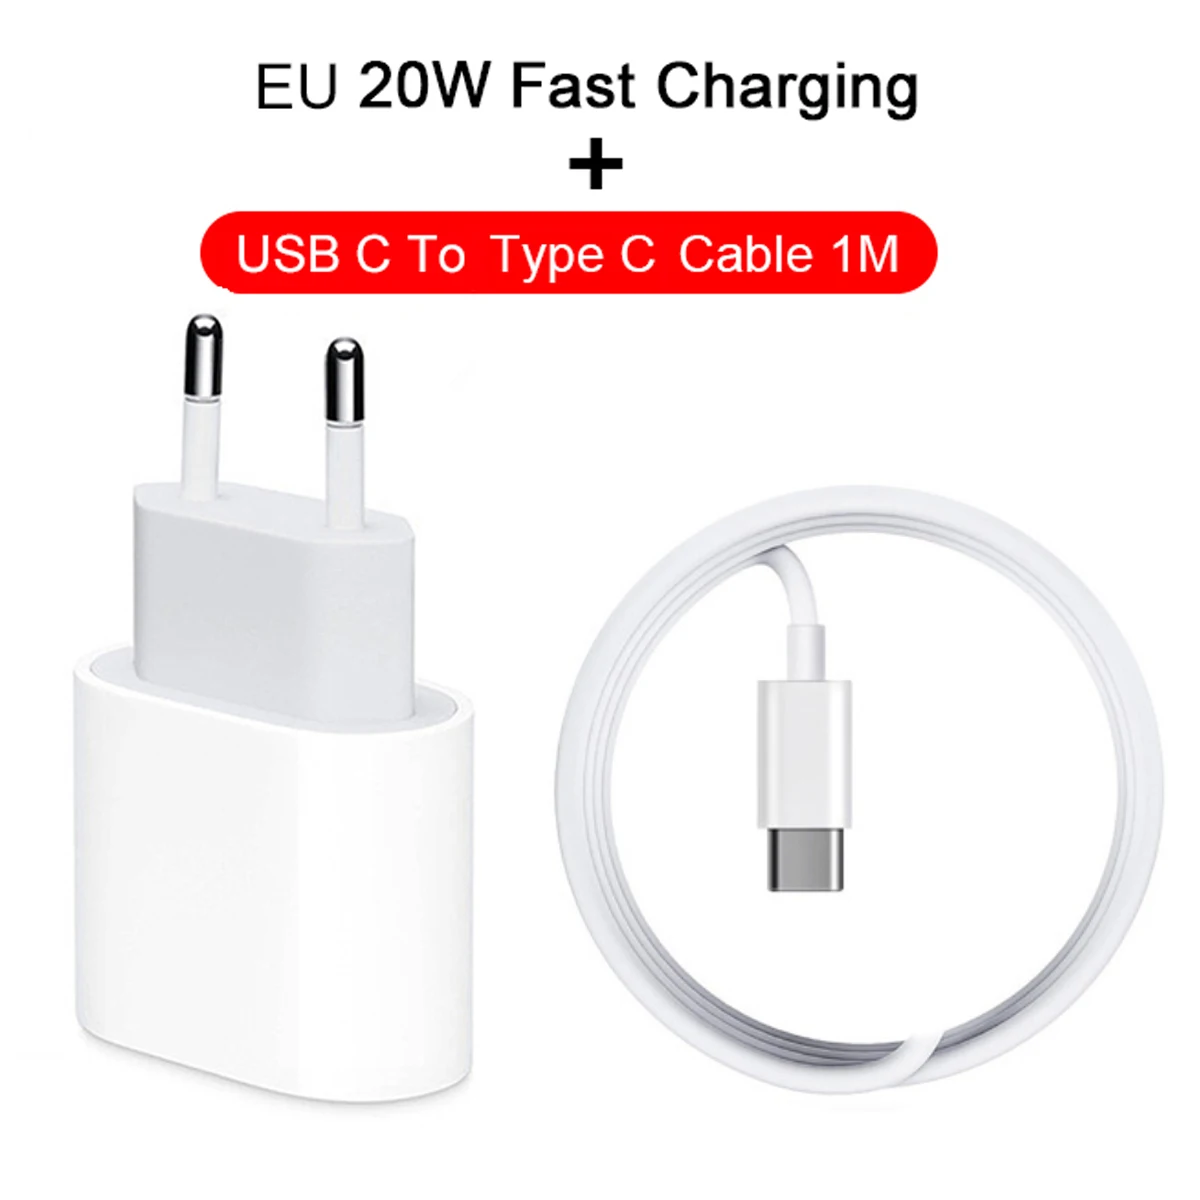 EU Plug And Cable